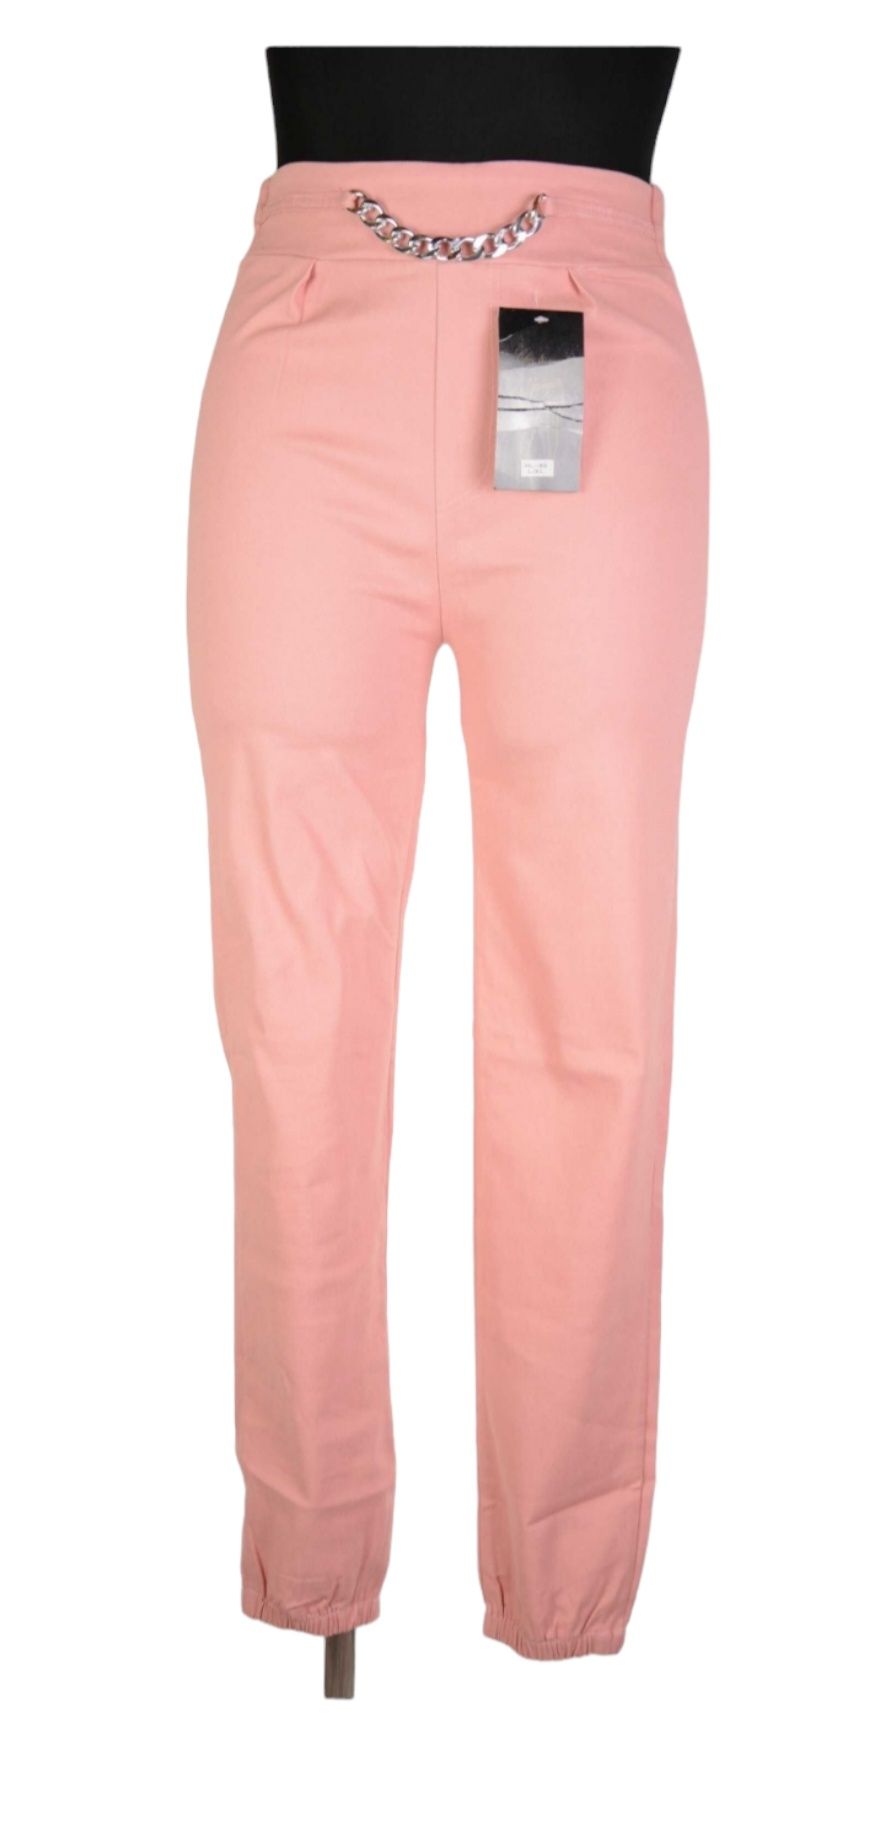 Spodnie damskie, legginsy z łańcuszkiem, różowe, rozmiar L/XL